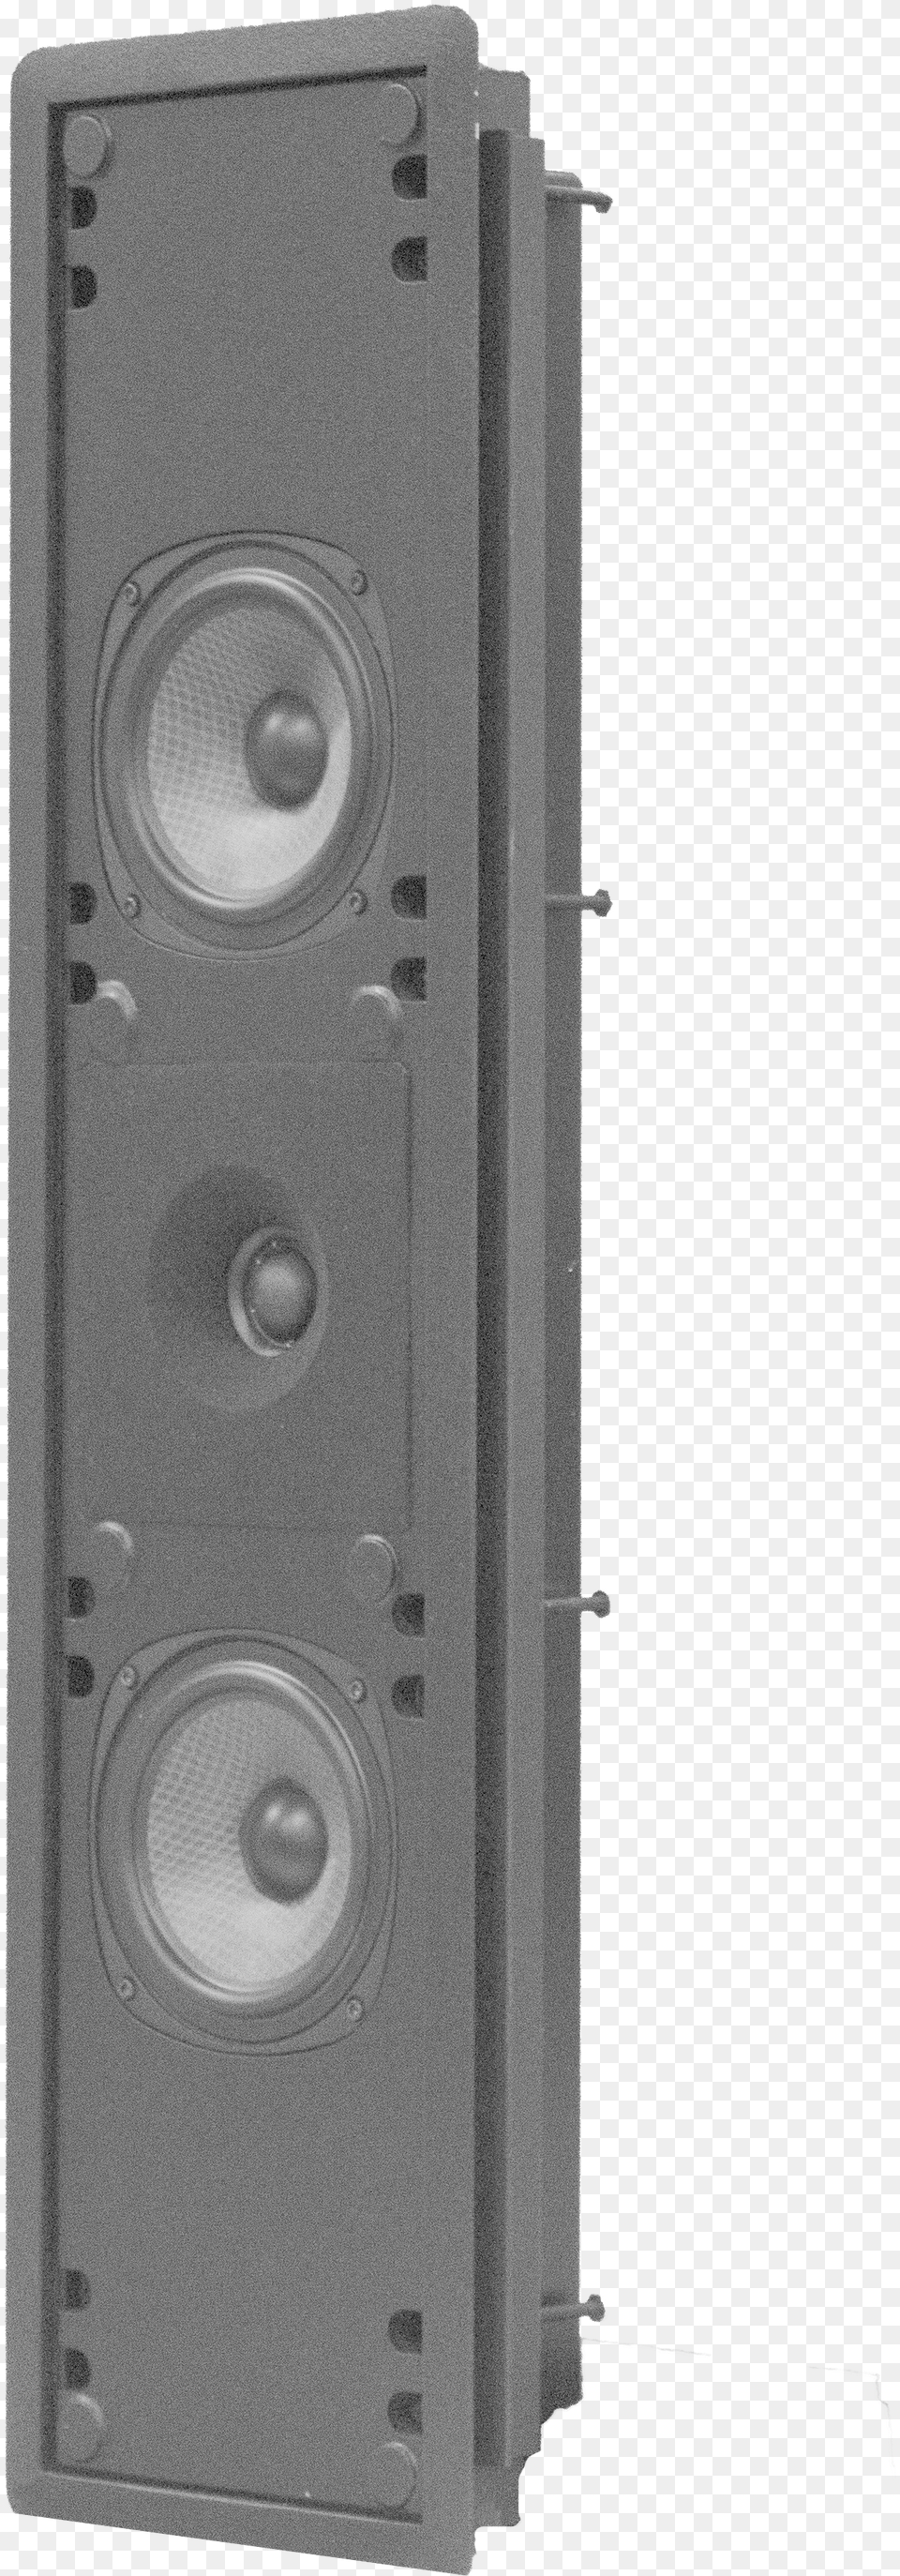 Loudspeaker, Electronics, Speaker Png Image